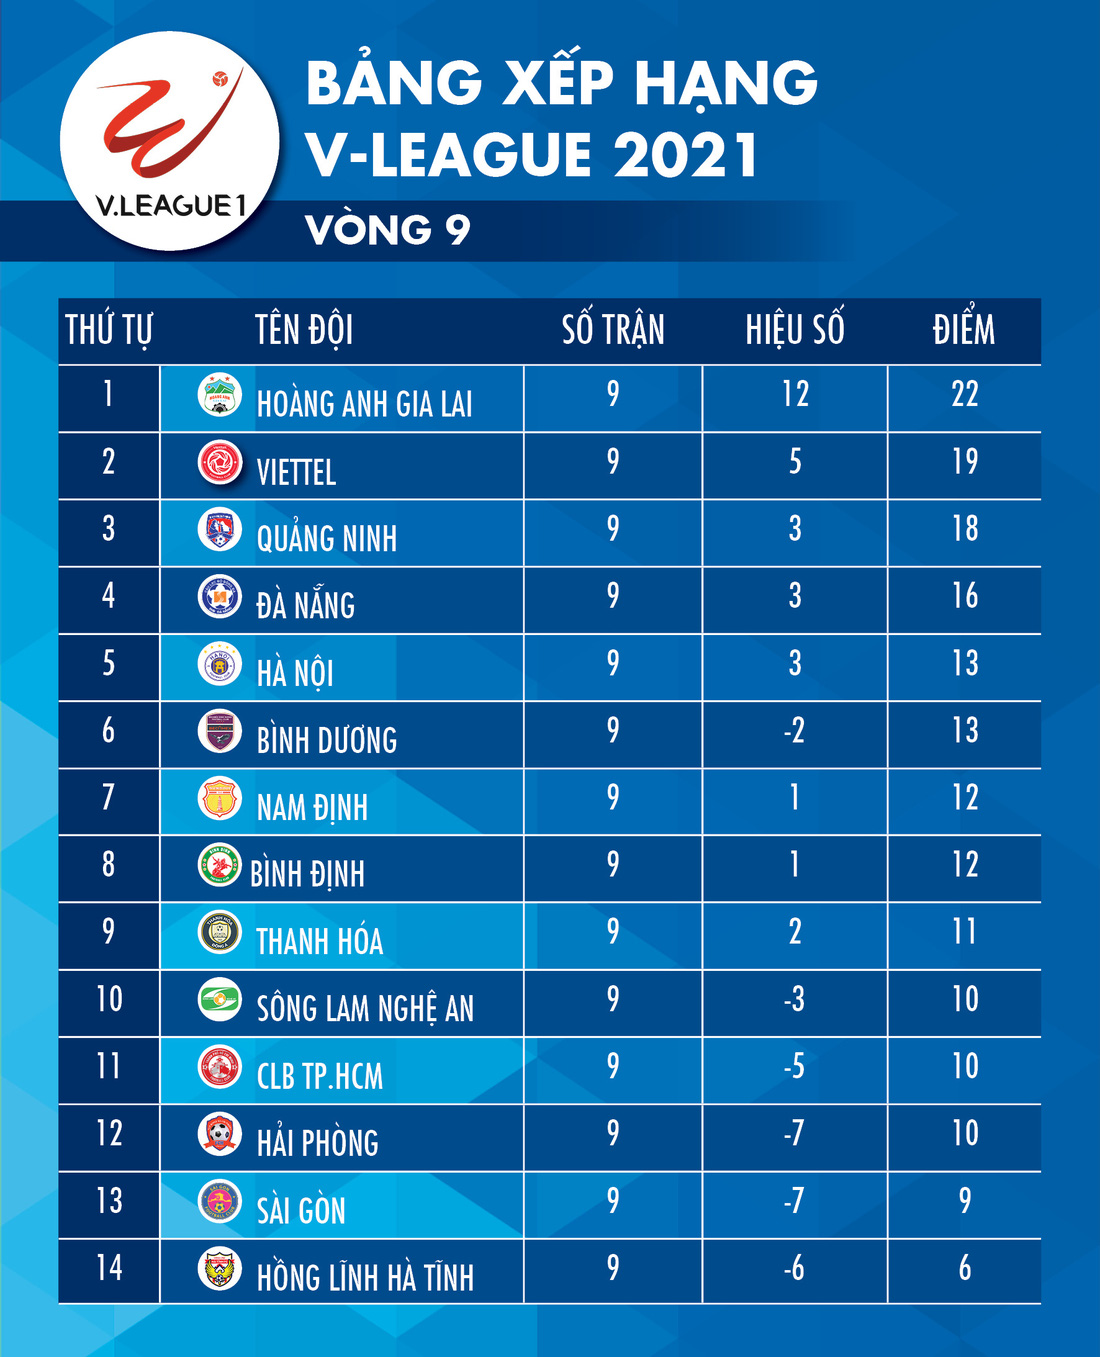 Kết quả, bảng xếp hạng V-League: HAGL số 1, Sài Gòn và CLB TP.HCM trong nhóm nguy hiểm - Ảnh 2.